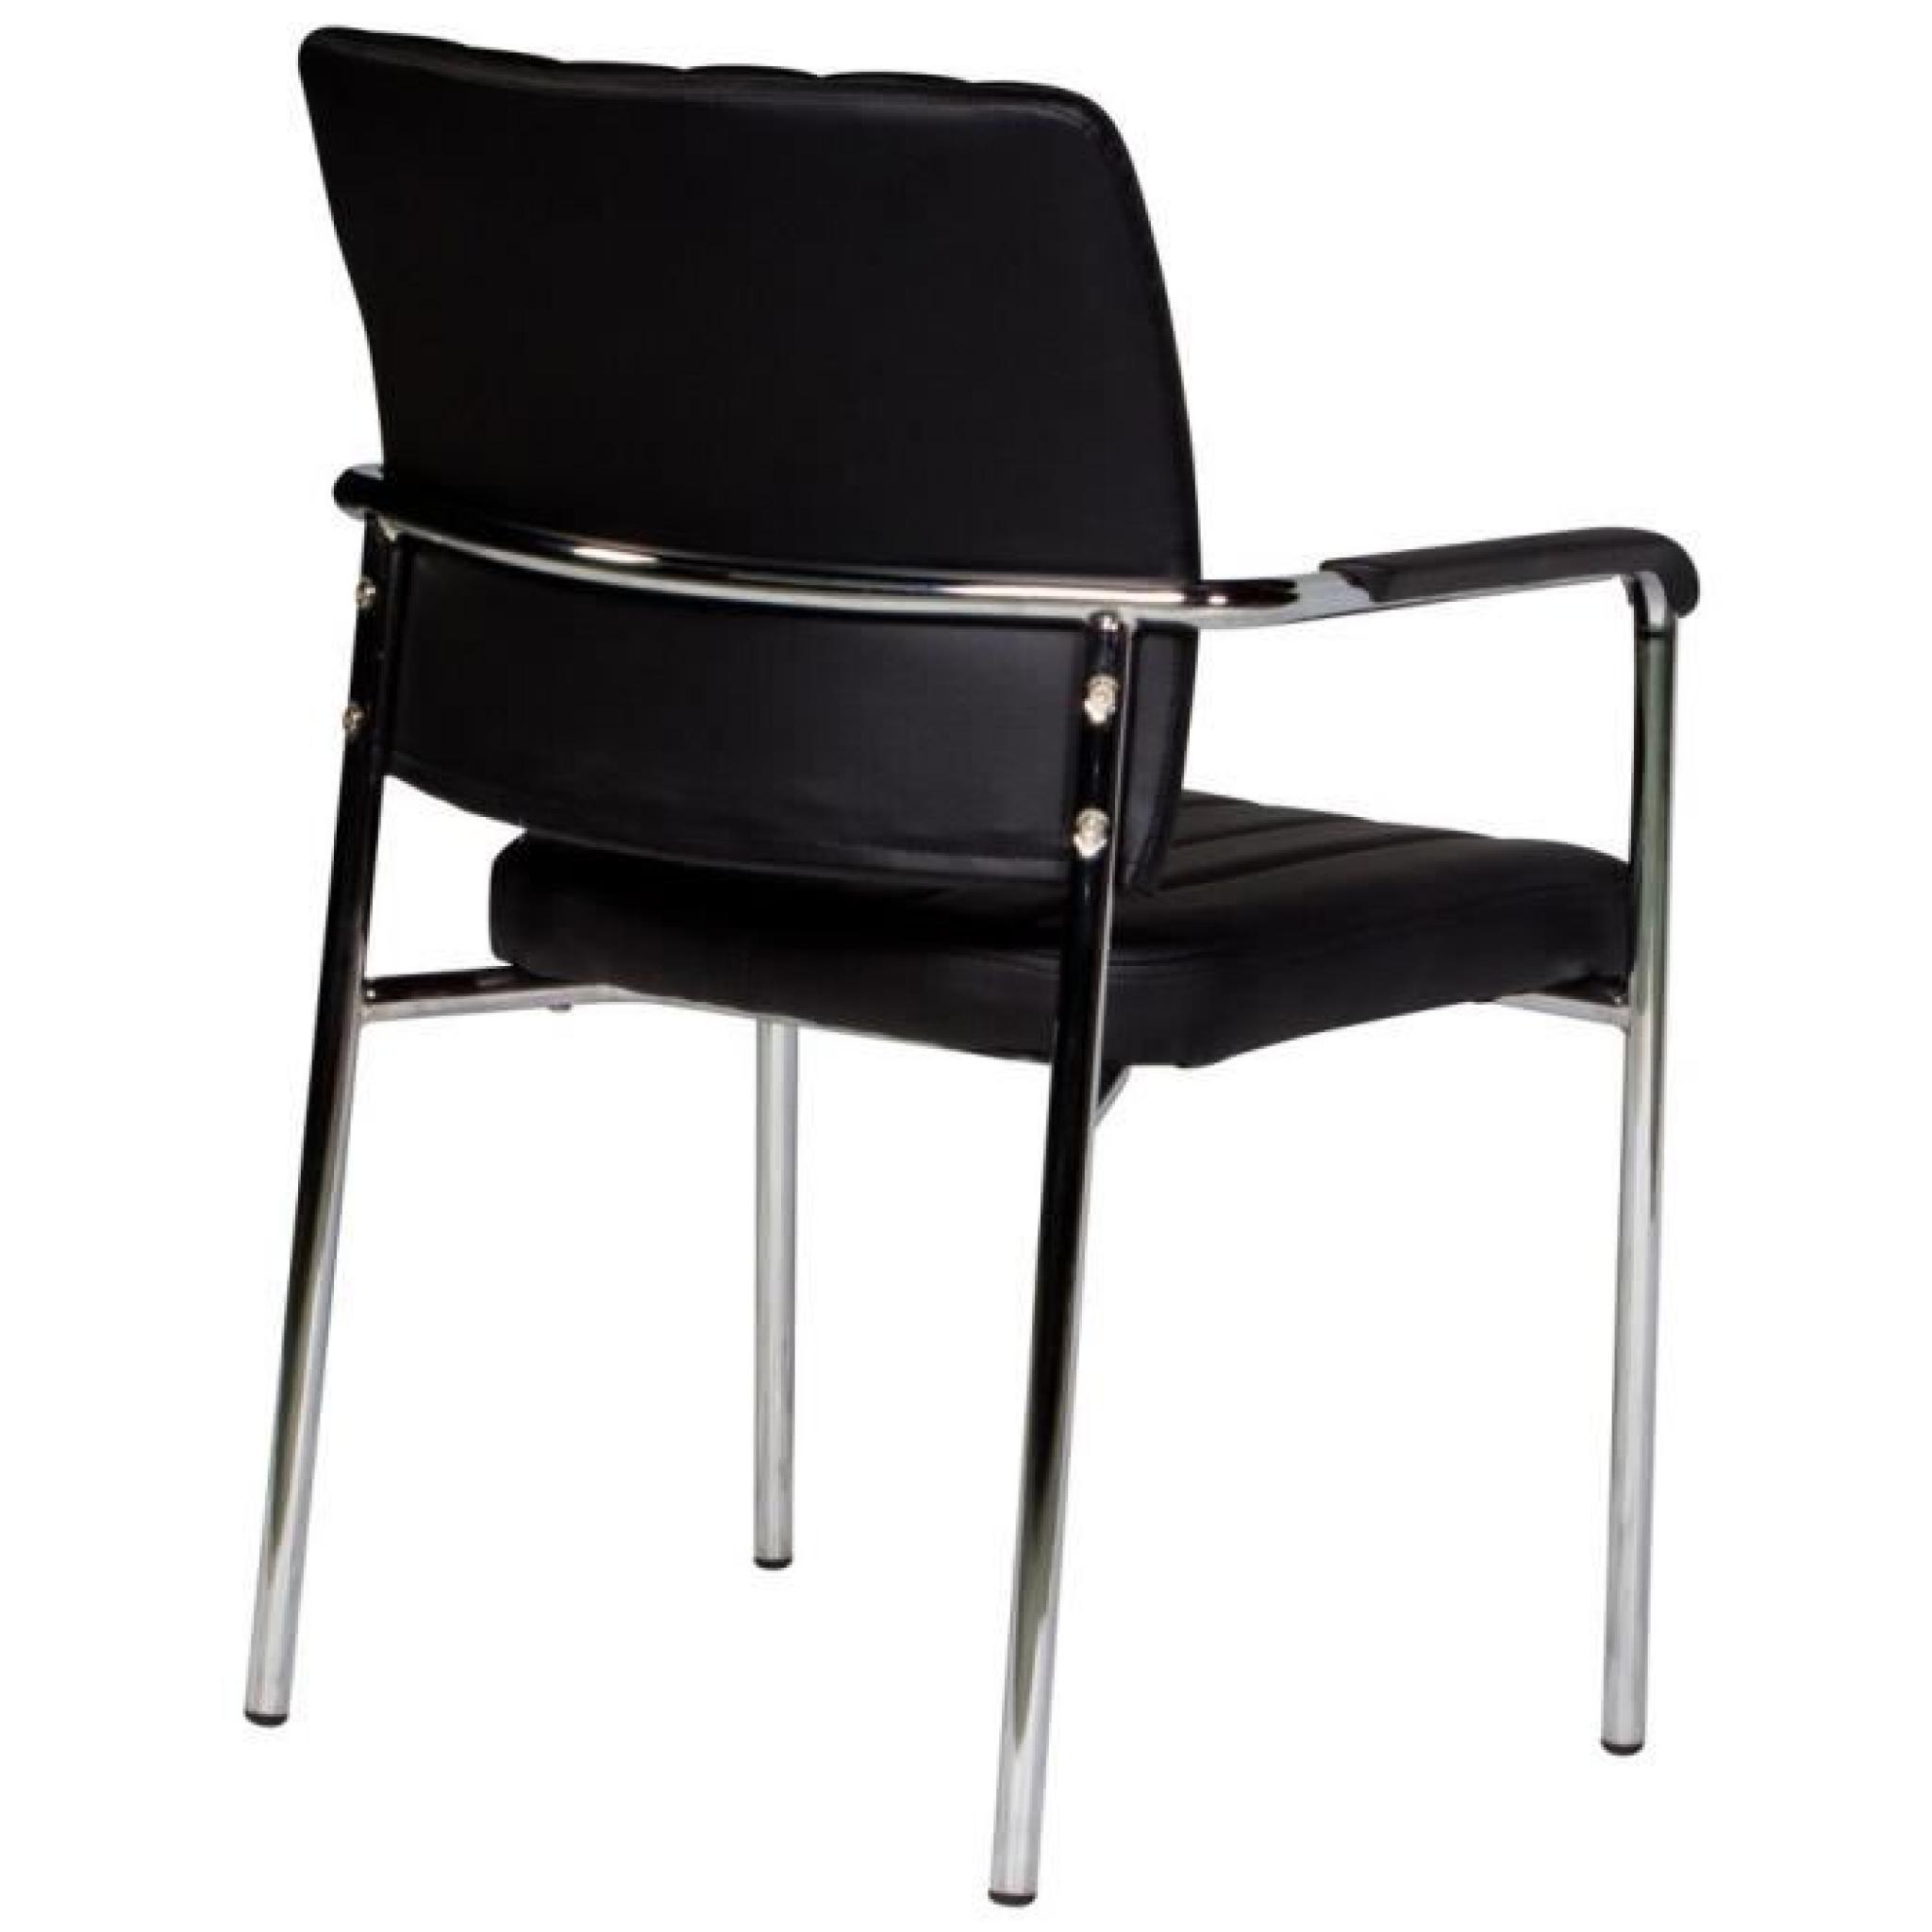 Chaise noire ultra moderne avec accoudoirs pas cher